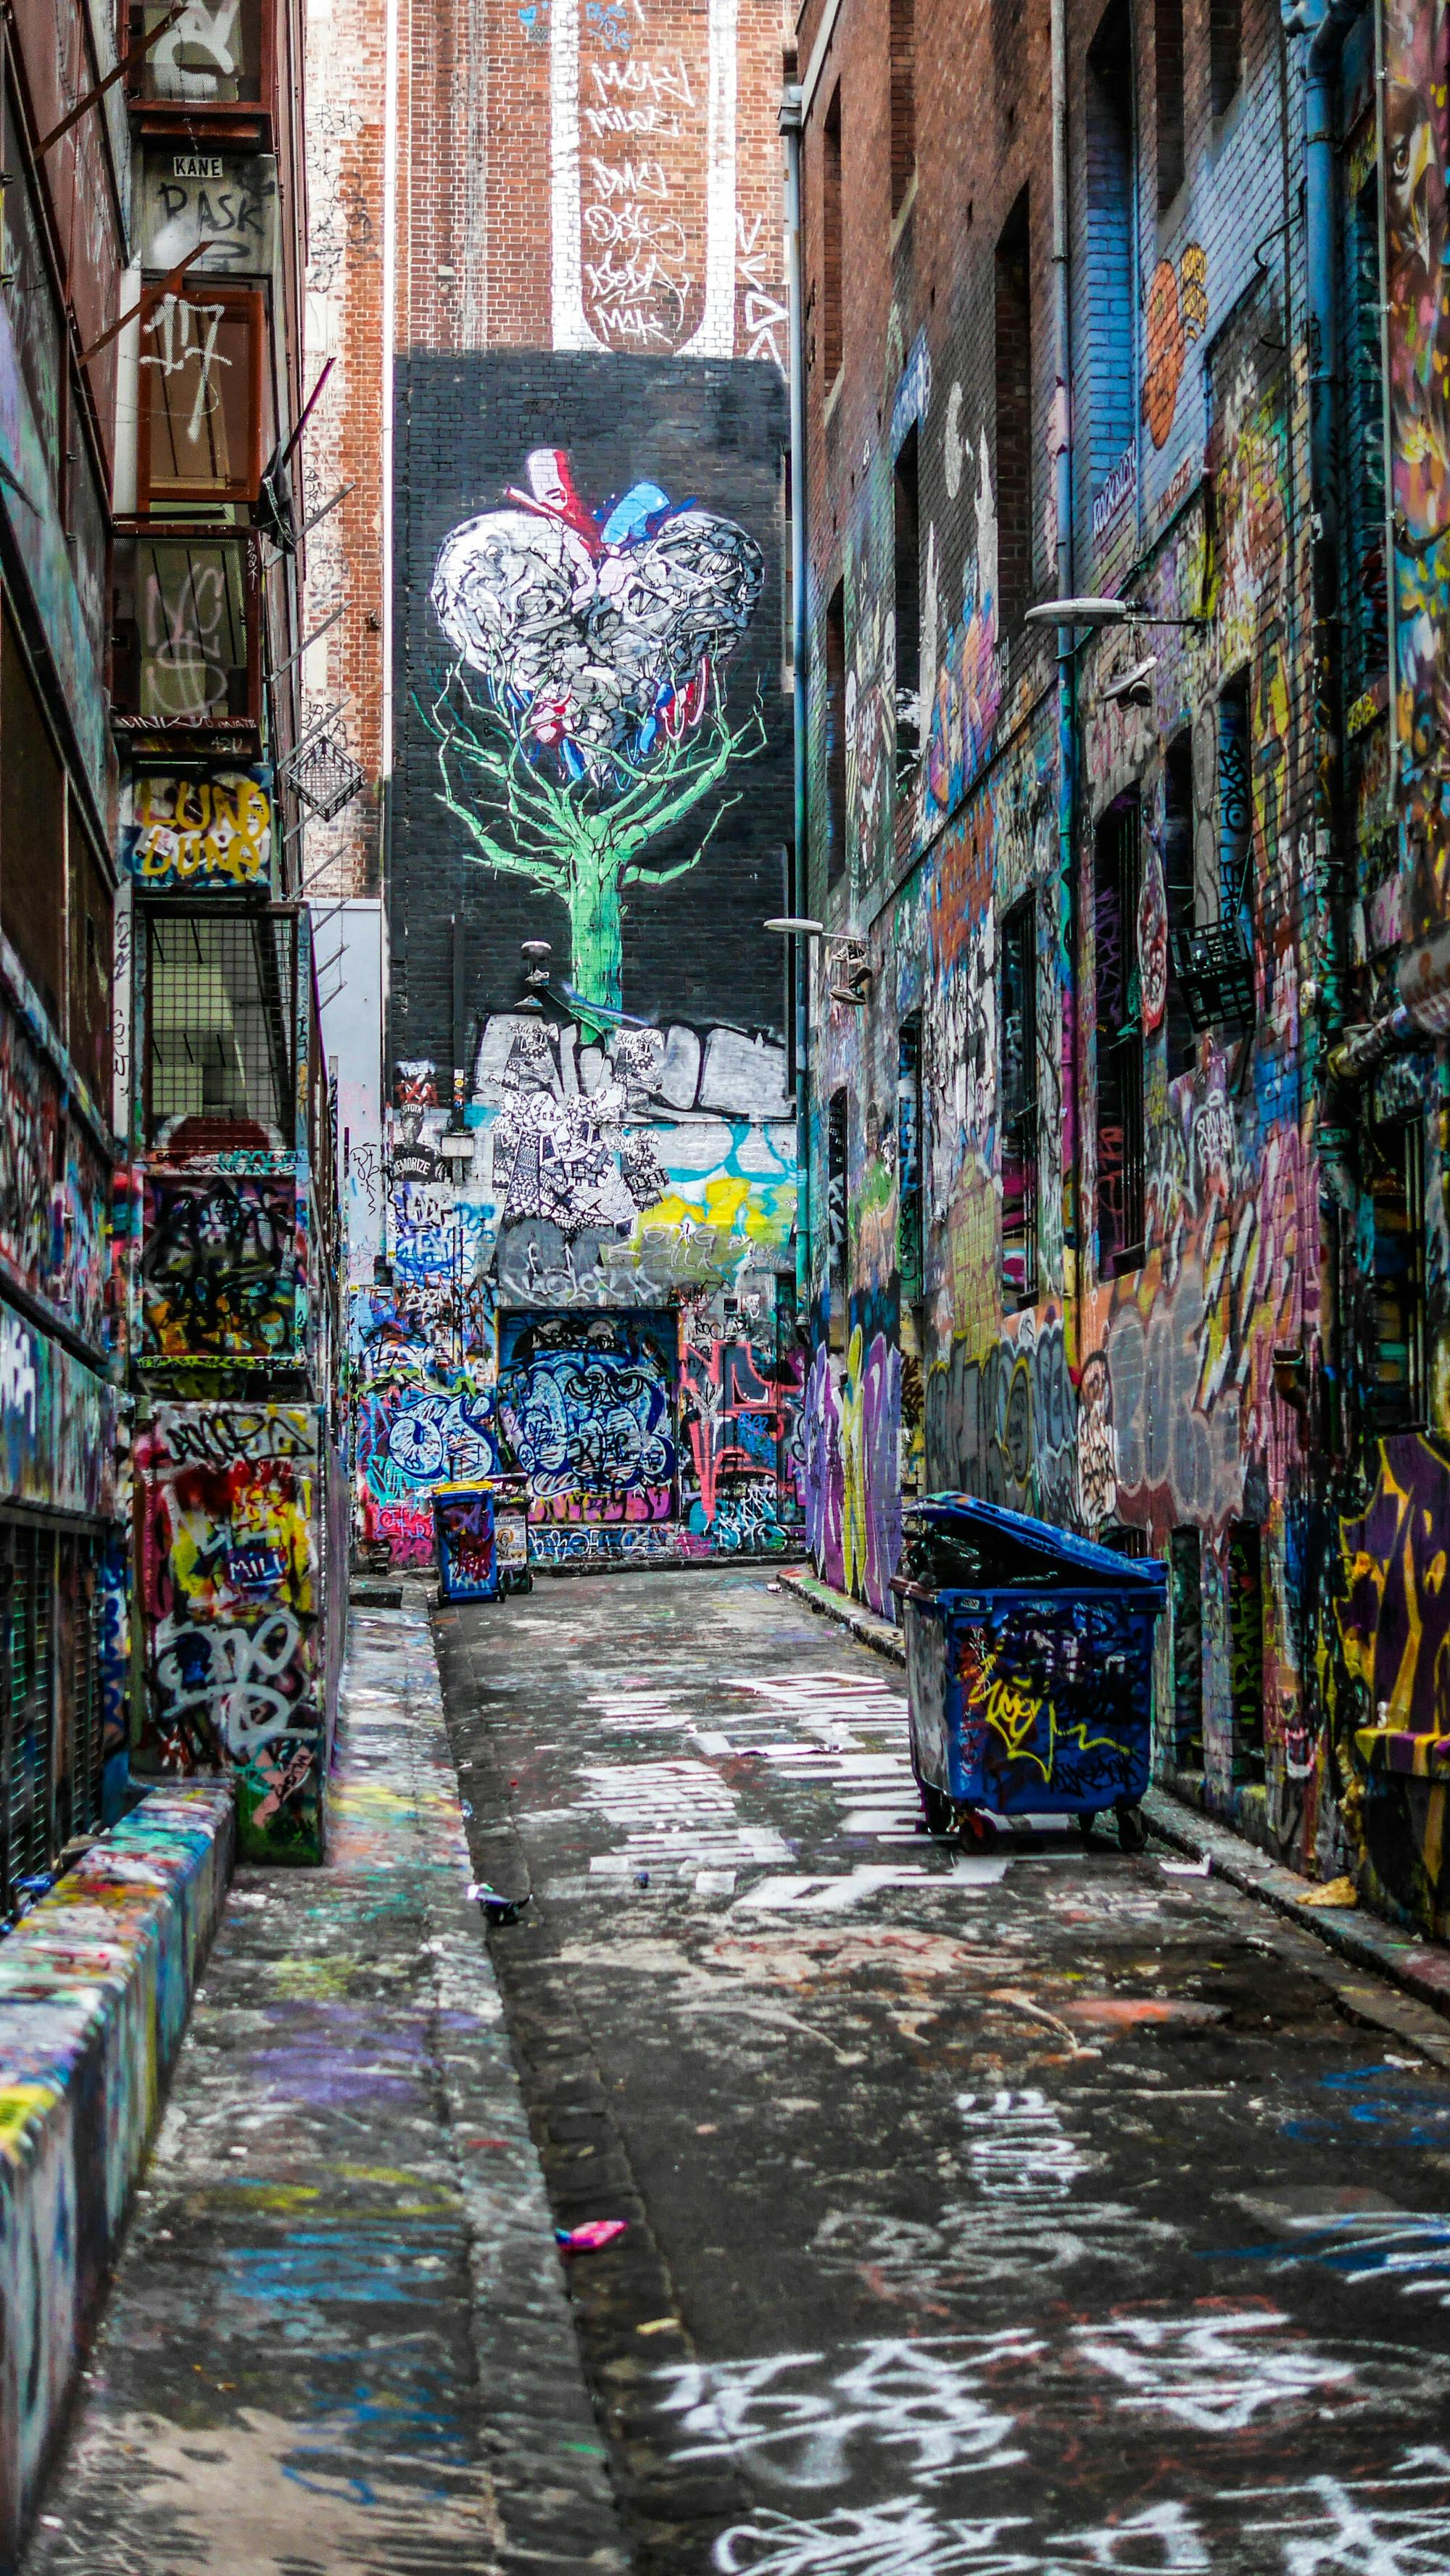 Boczna uliczka całkowicie pokryta graffiti. Zarówno ściany domów, kontenery na śmieci, jak i ulice.